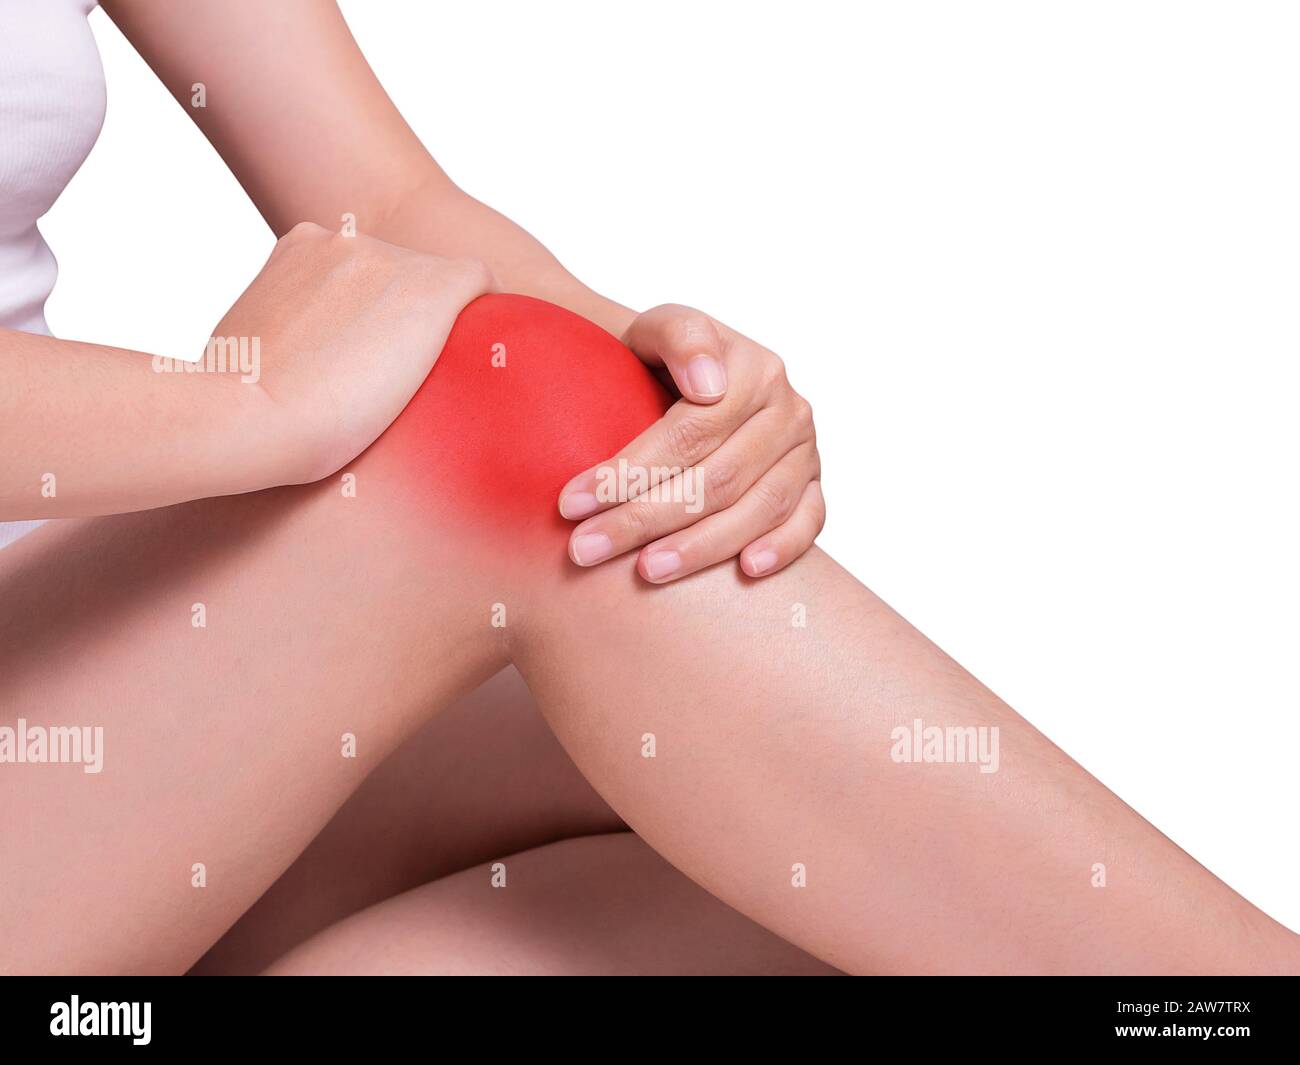 main de la femme tenant autour du genou souffrant de douleur de genou, douleurs articulaires. couleur rouge mettre en évidence au genou isolé sur fond blanc. soins de santé et medi Banque D'Images